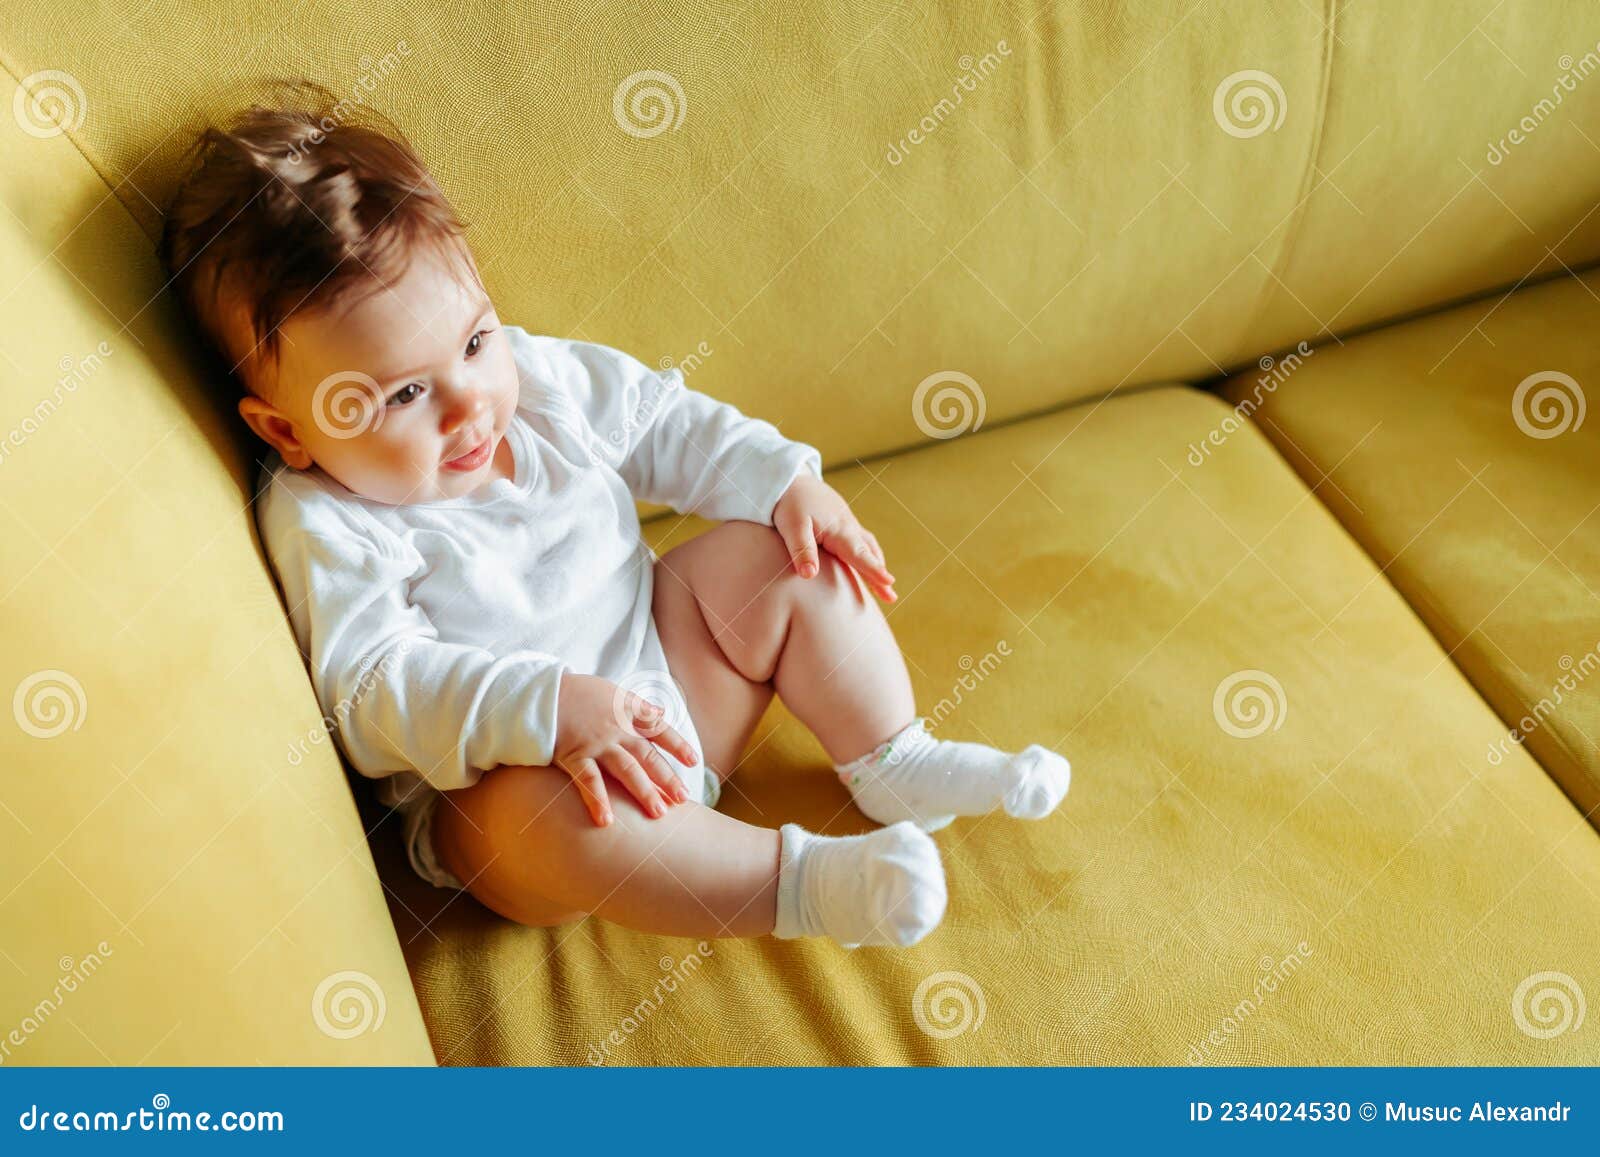 Bebé sentado en un sillón imagen de archivo. Imagen de feliz